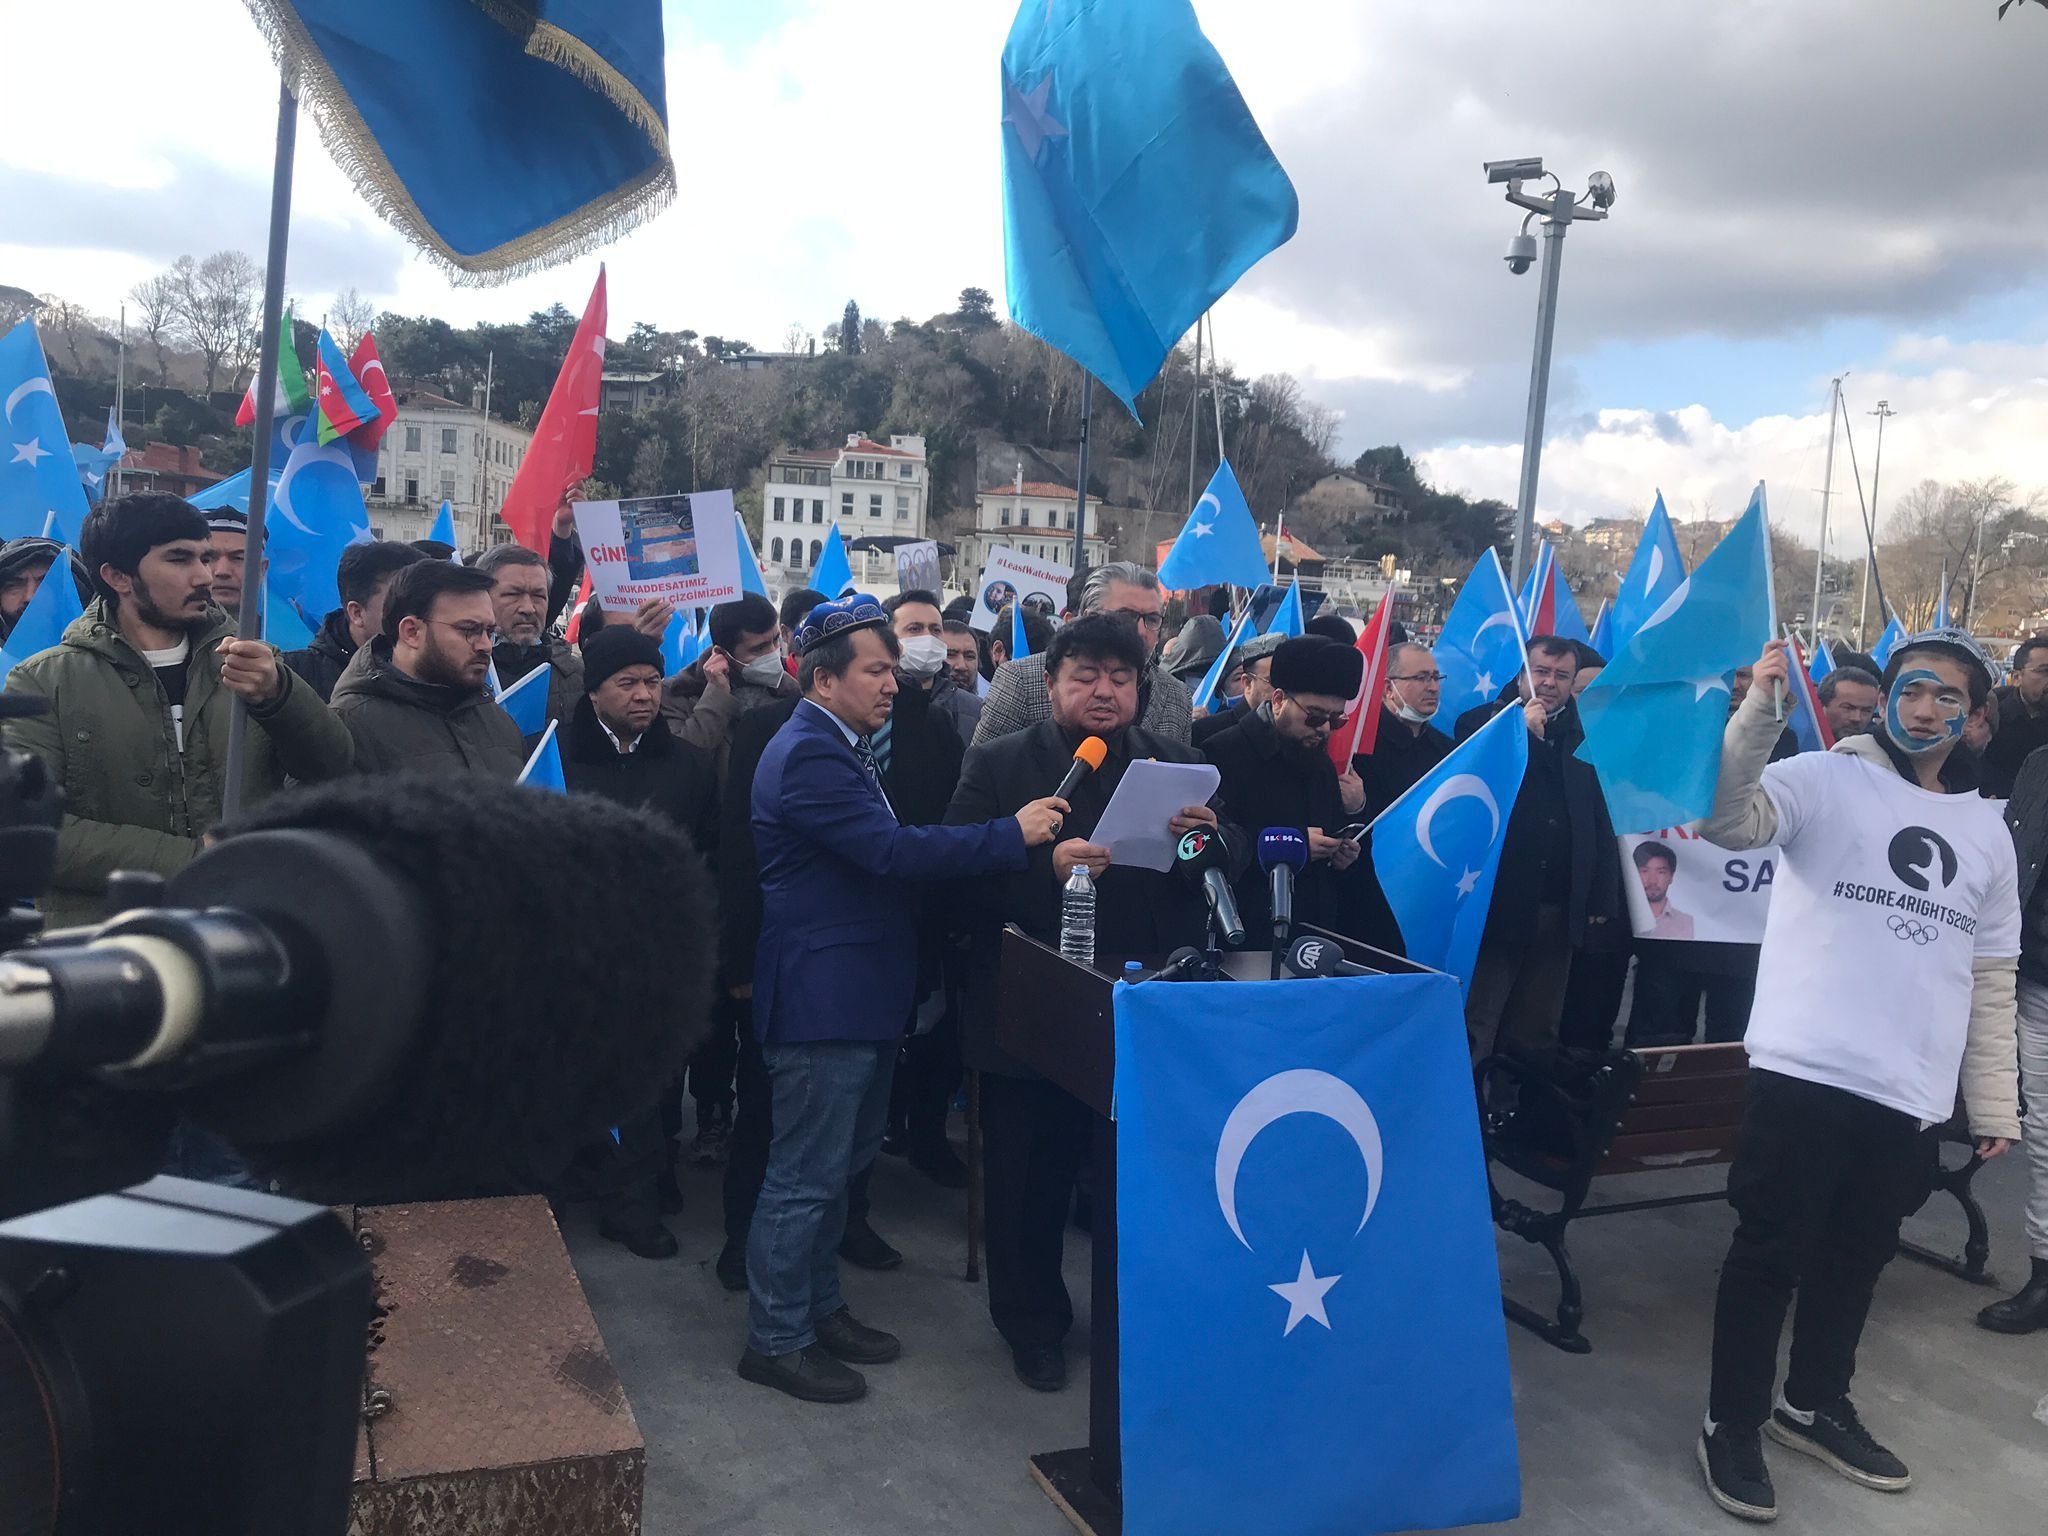 İstanbul’da 5 Şubat Gulca Katliamı anıldı ve Pekin Kış Olimpiyatları protesto edildi. QHA / TURKİSHFORUM -ABDULLAH TÜRER YENER - dogu turkistan uygurlar